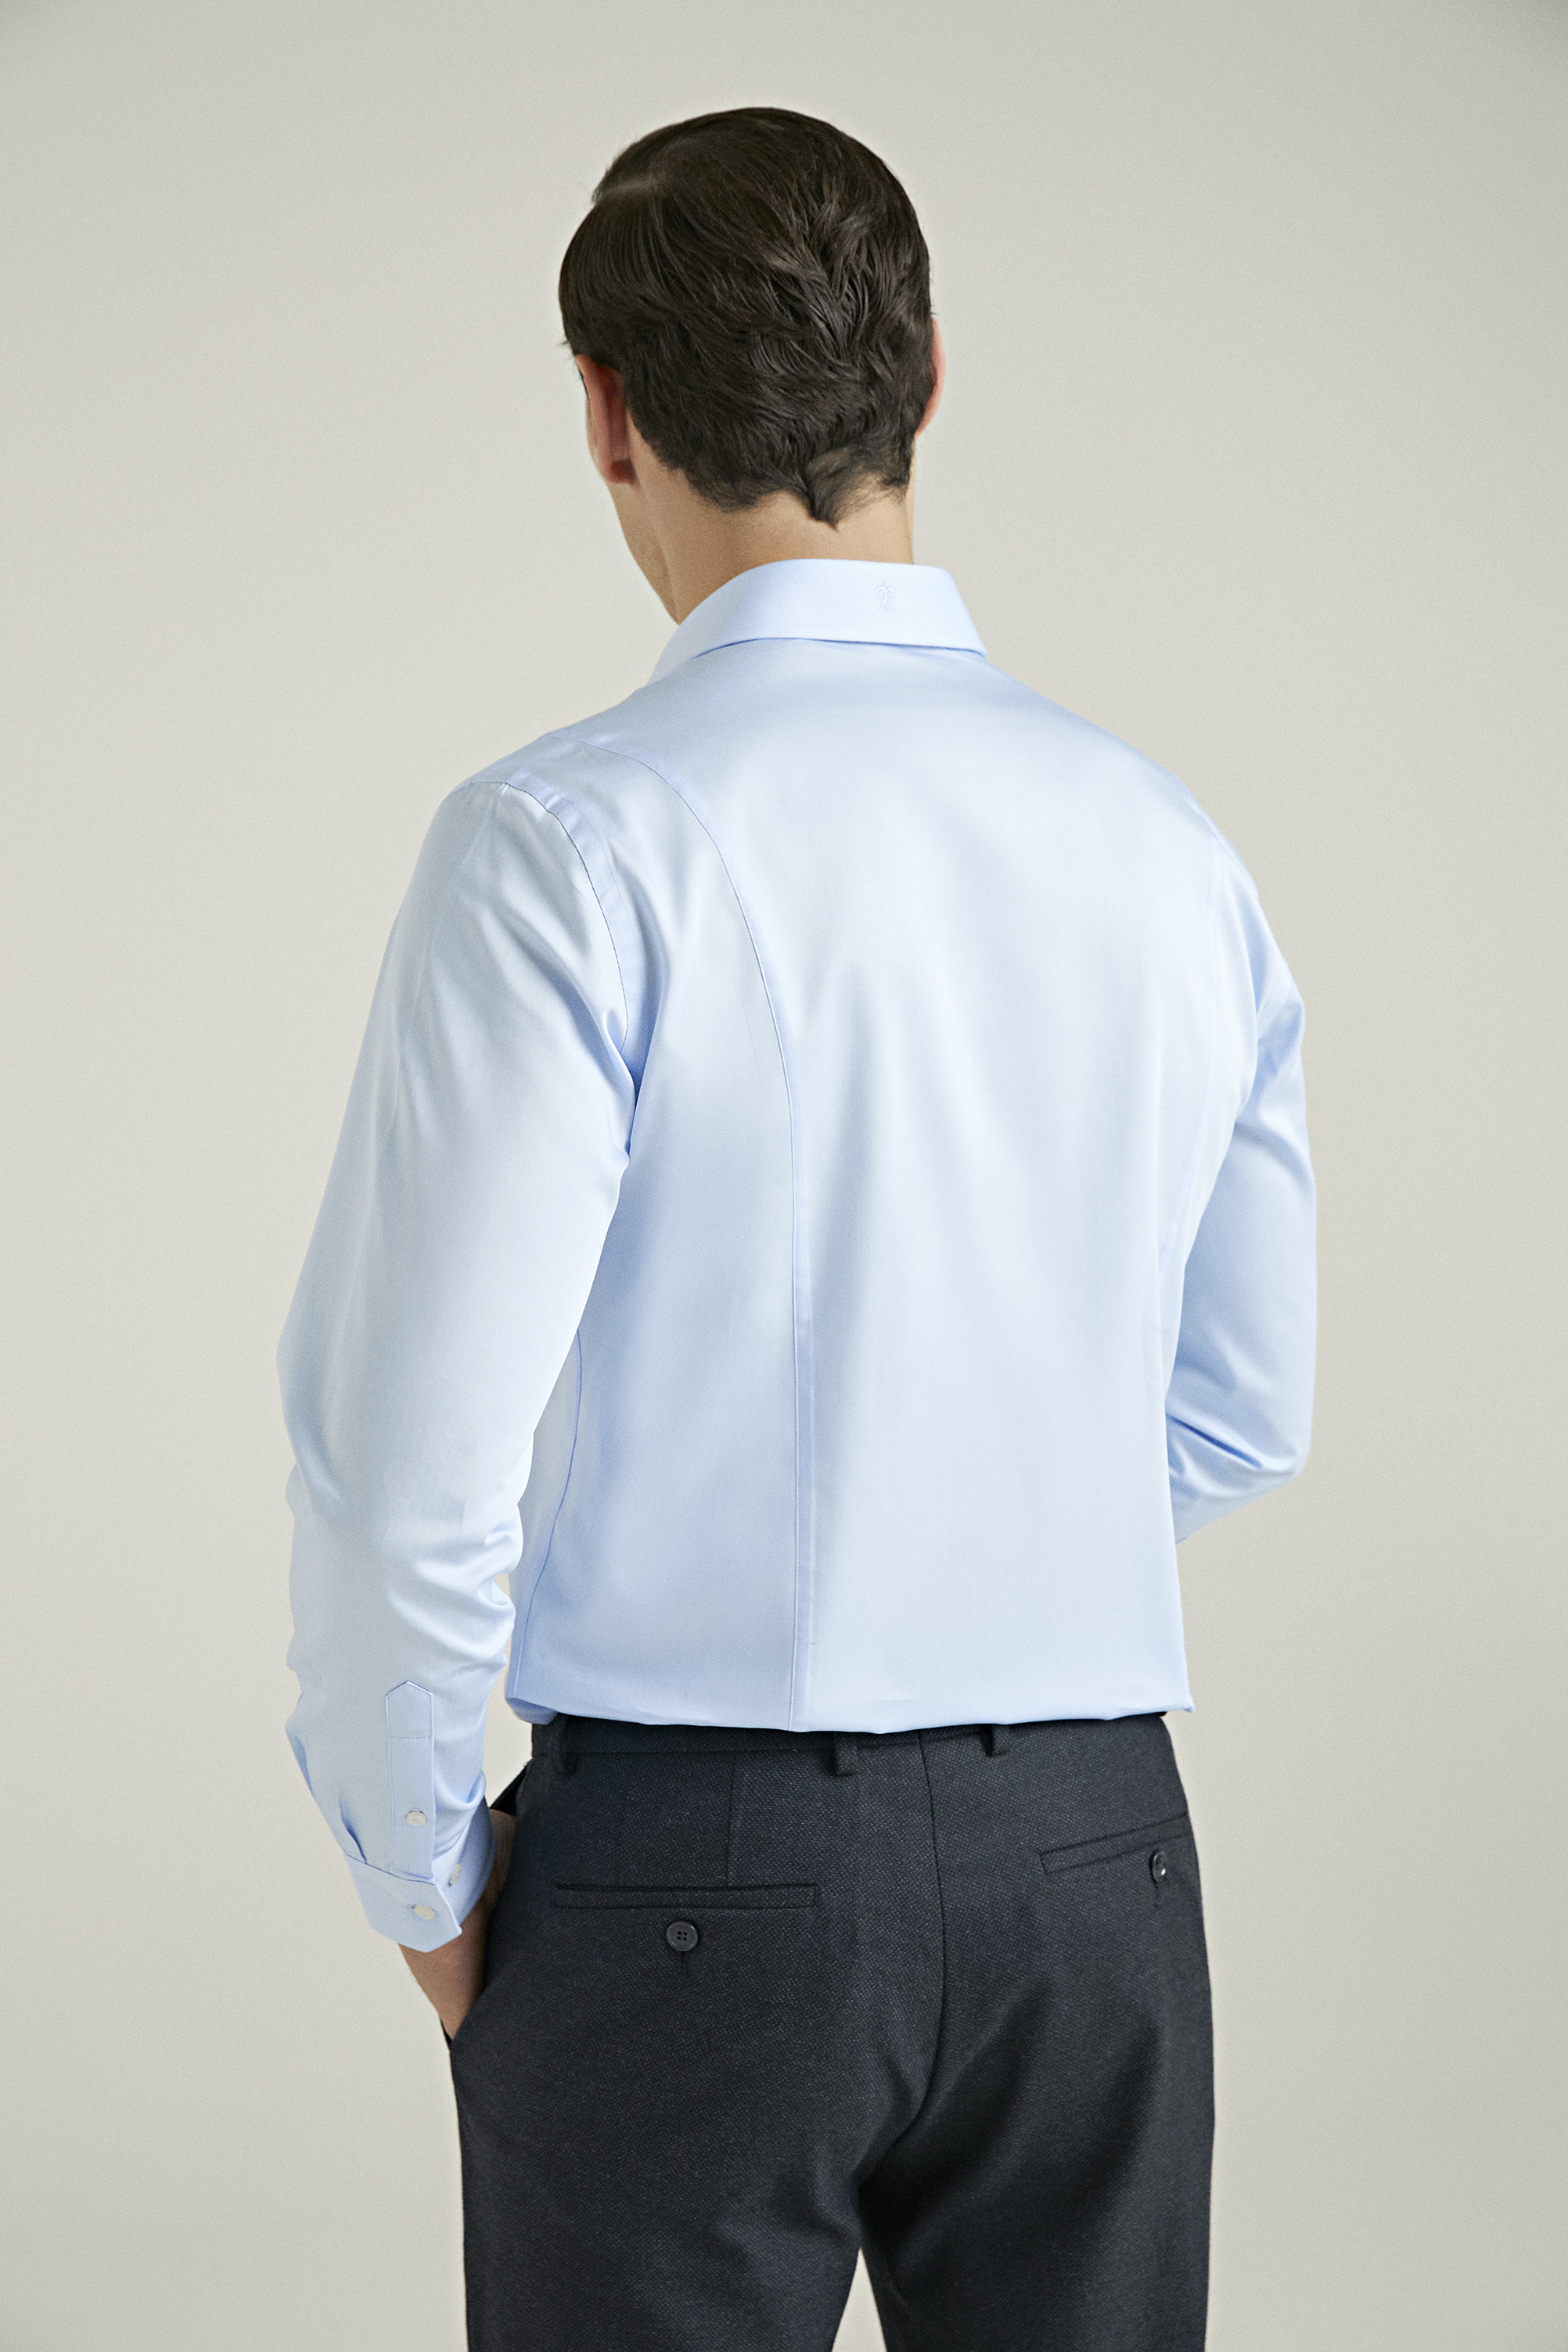 Damat Tween Damat Slim Fit Açık Mavi %100 Pamuk Gömlek. 4